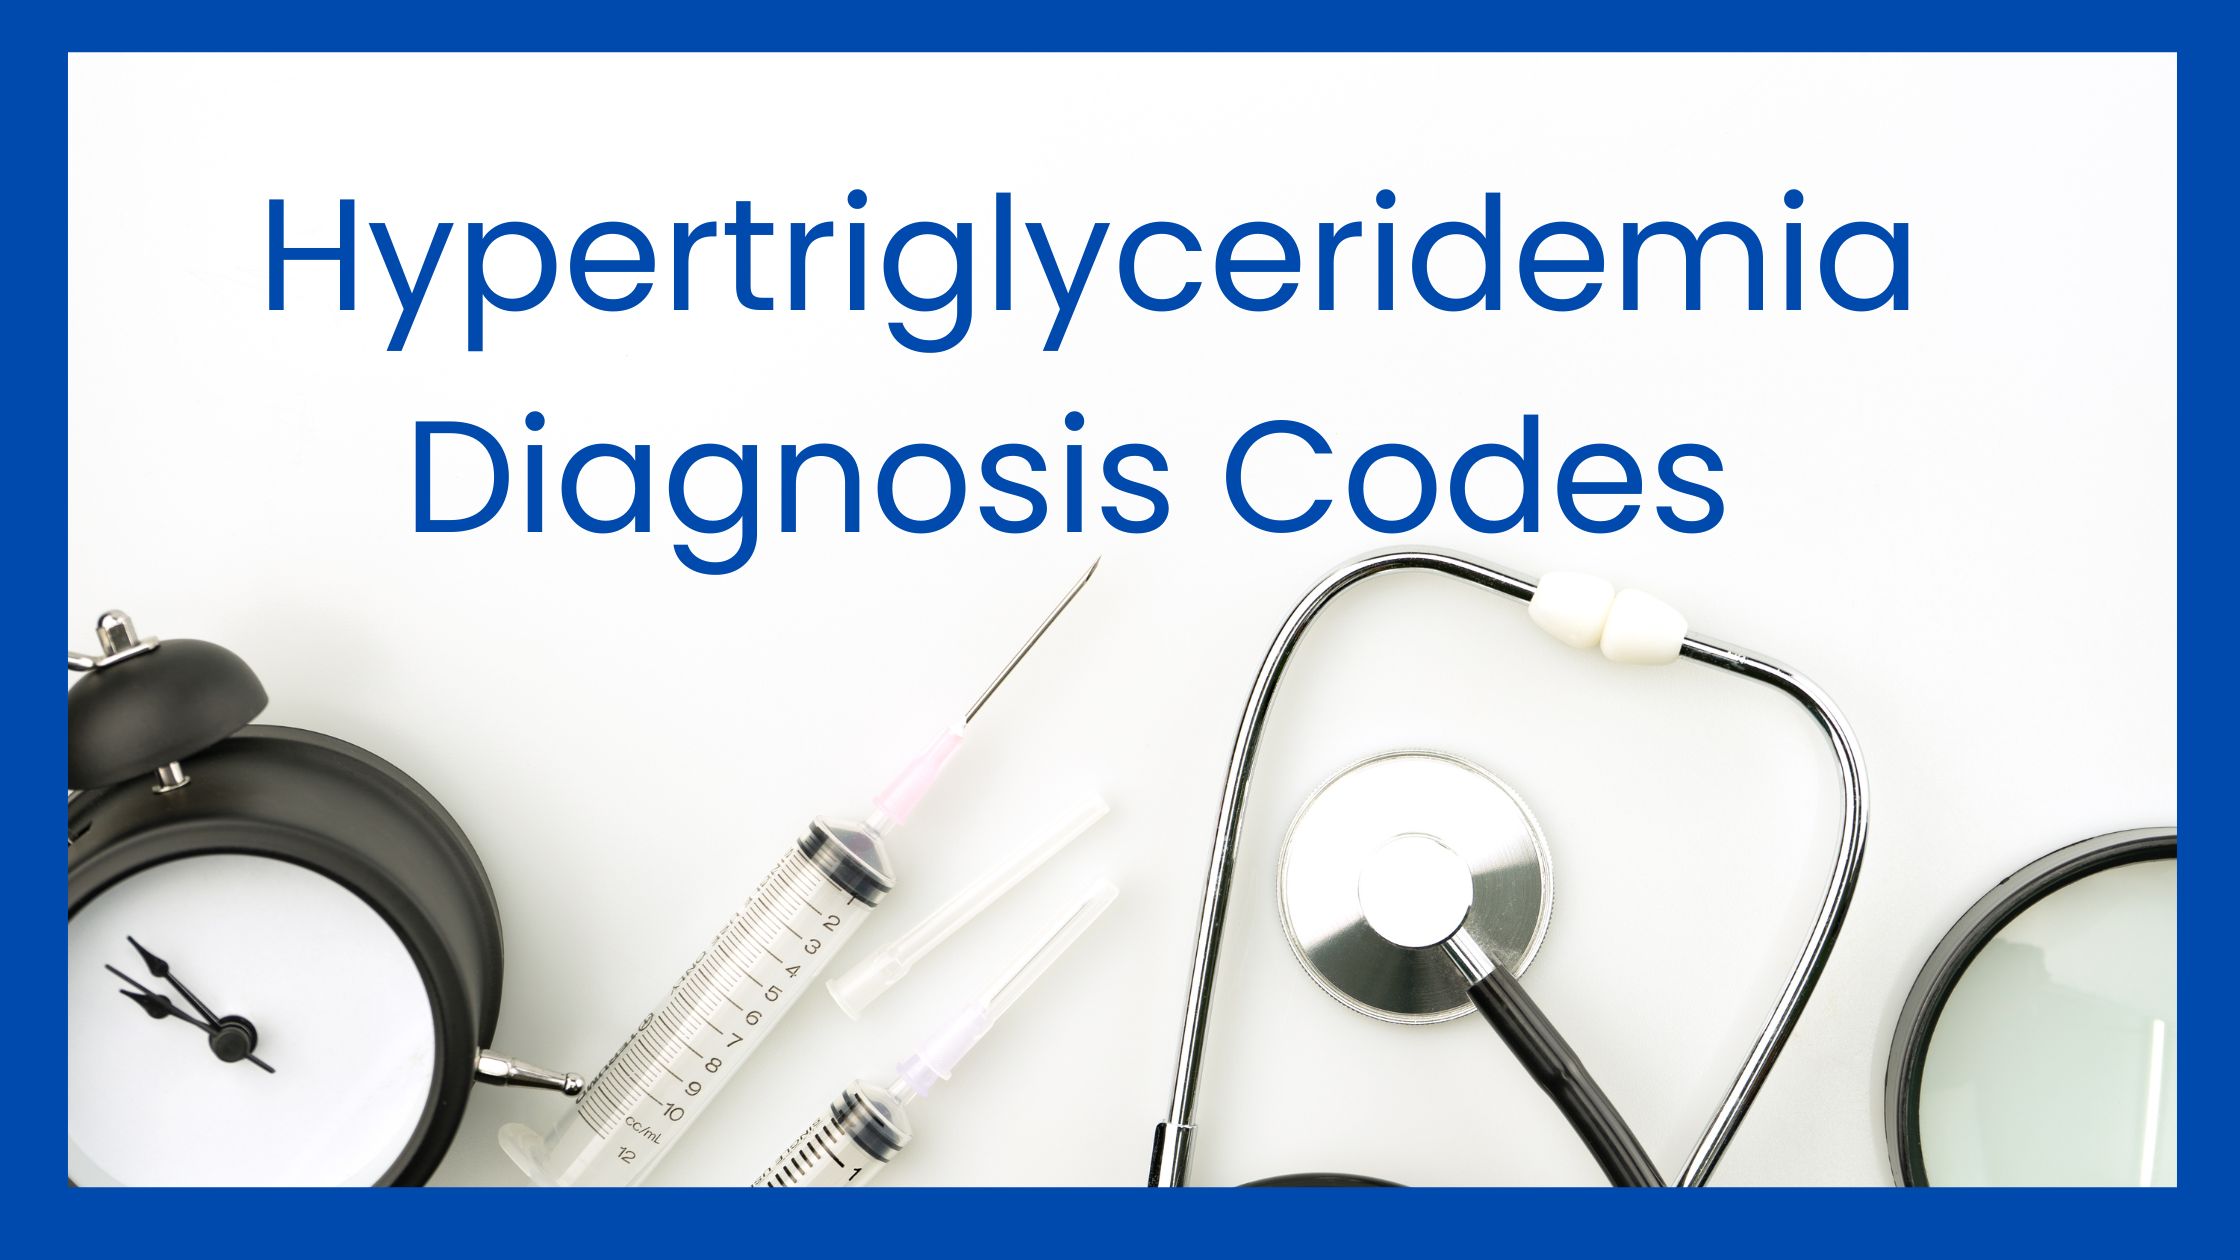 Hypertriglyceridemia icd 10 codes list